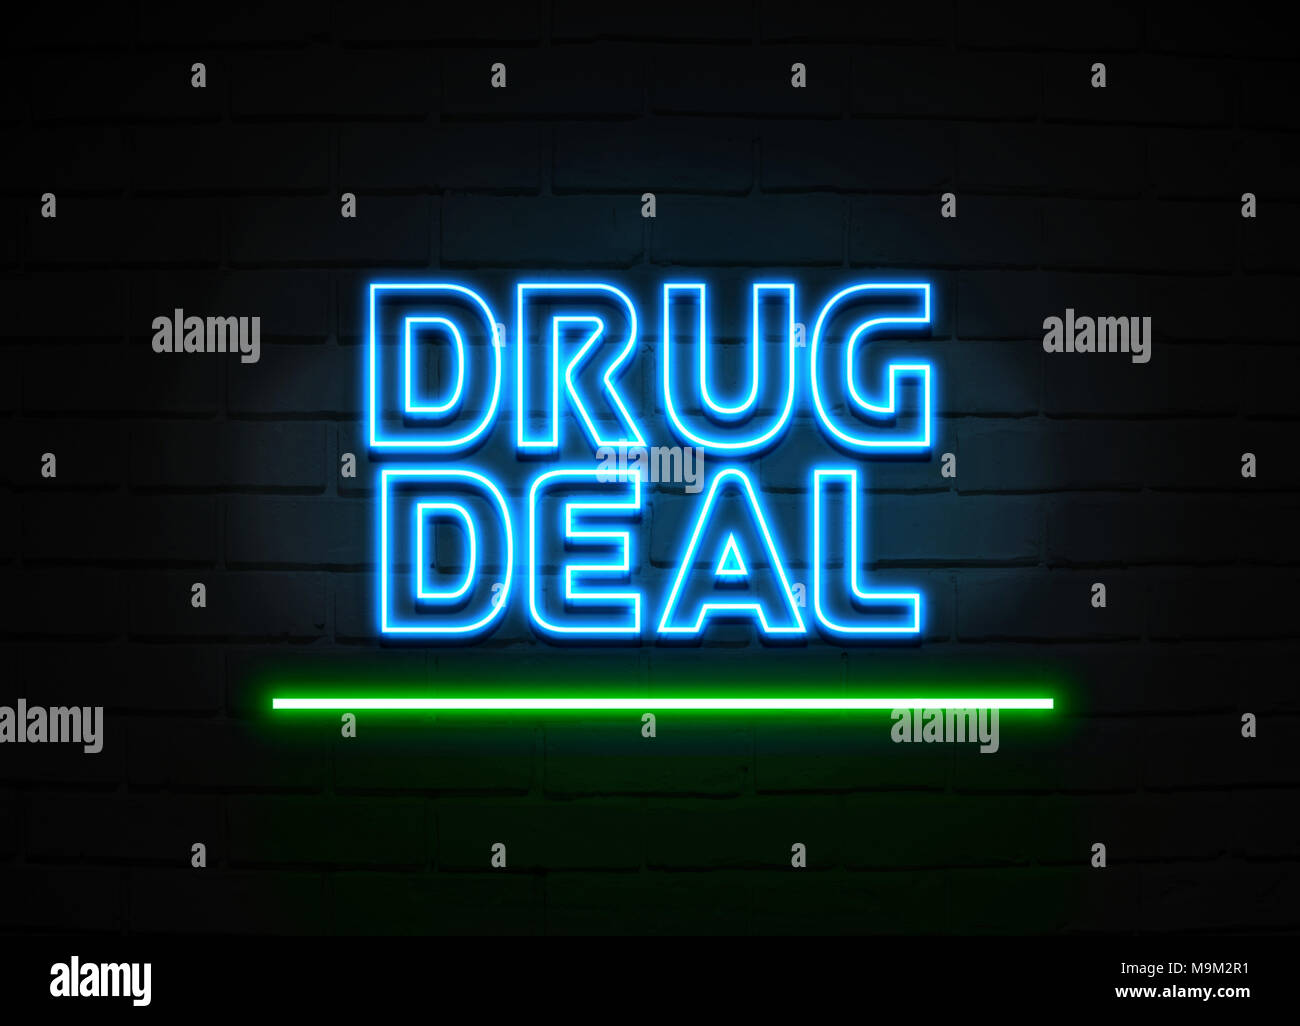 Droge viel Leuchtreklame - glühende Leuchtreklame auf brickwall Wand - 3D-Royalty Free Stock Illustration dargestellt. Stockfoto